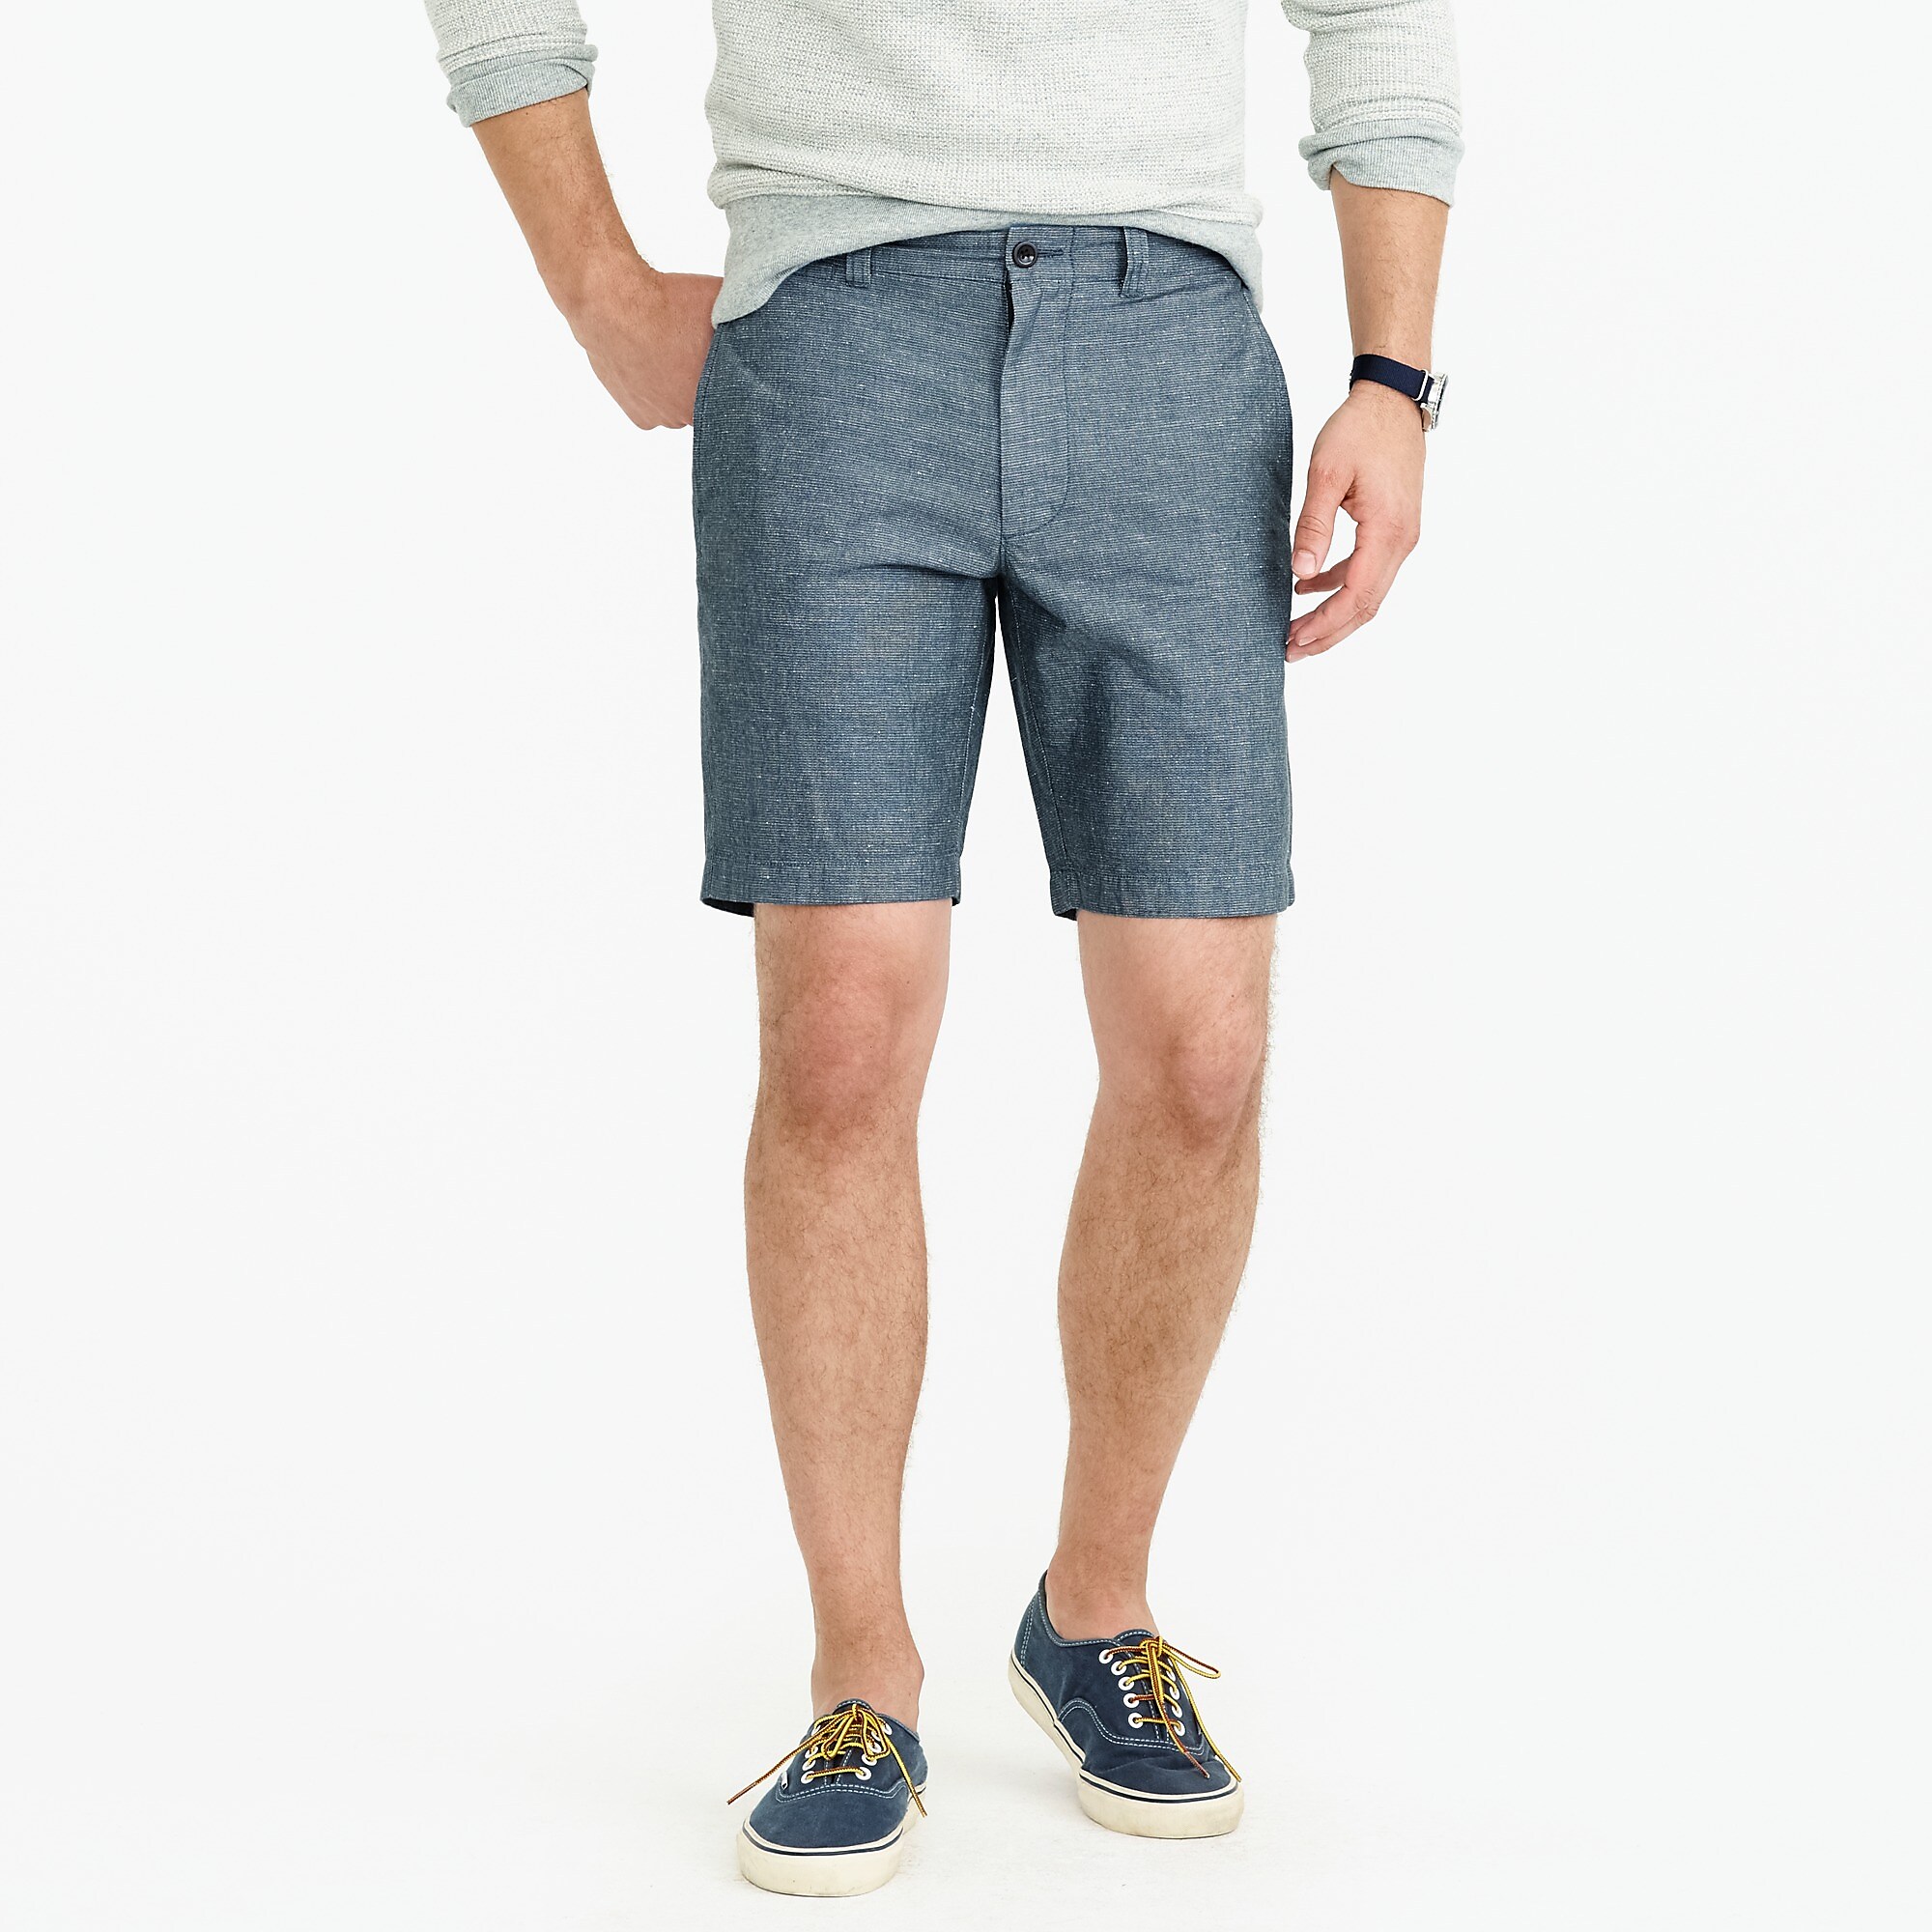 Gray Khaki Shorts - Hardon Clothes